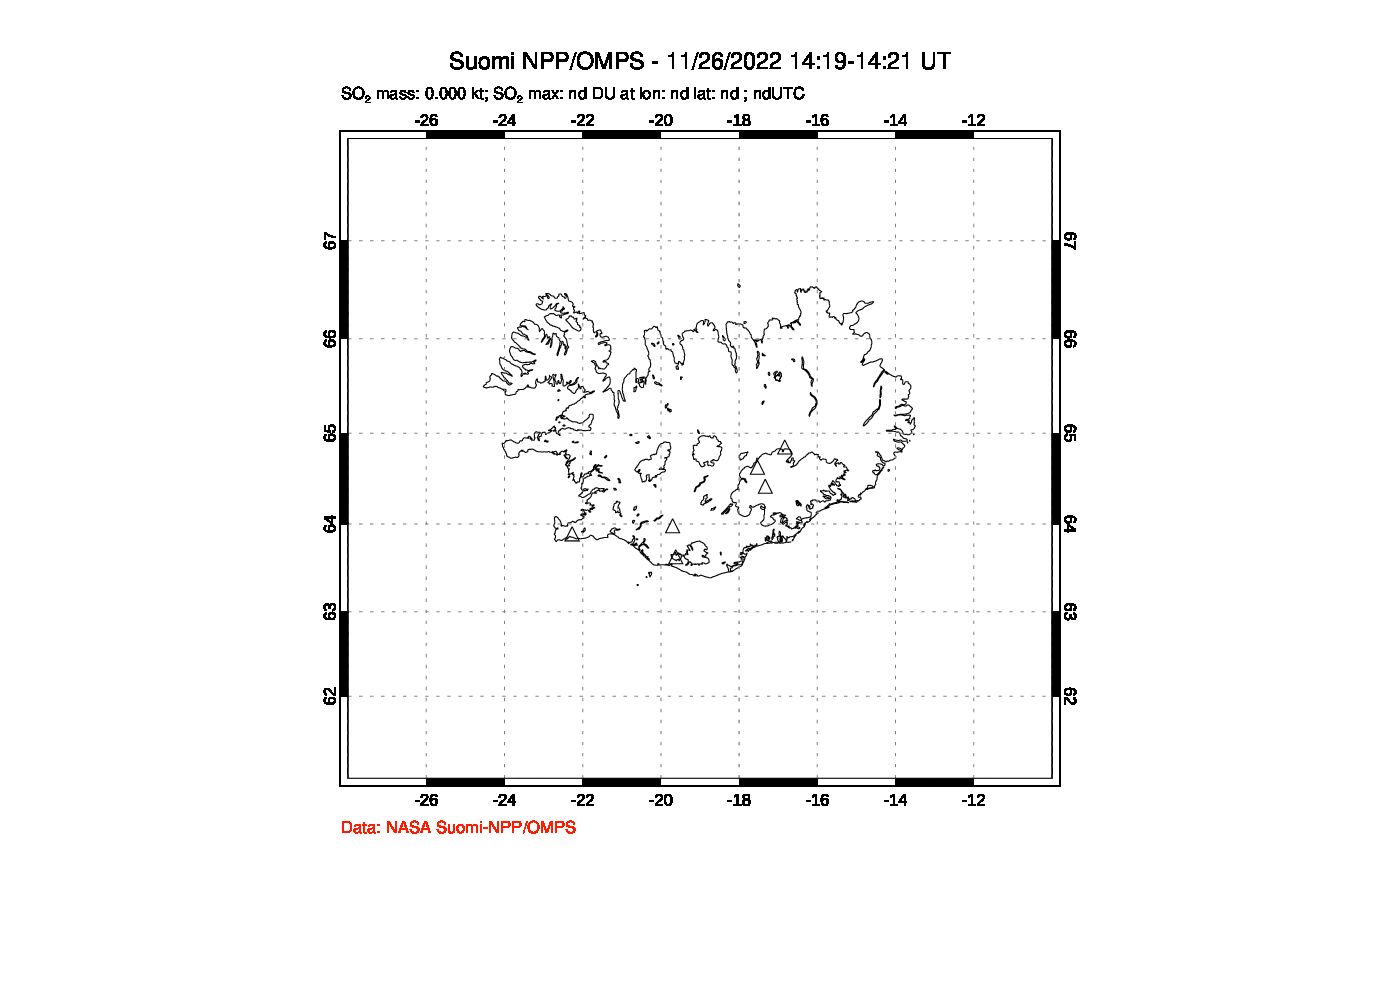 A sulfur dioxide image over Iceland on Nov 26, 2022.